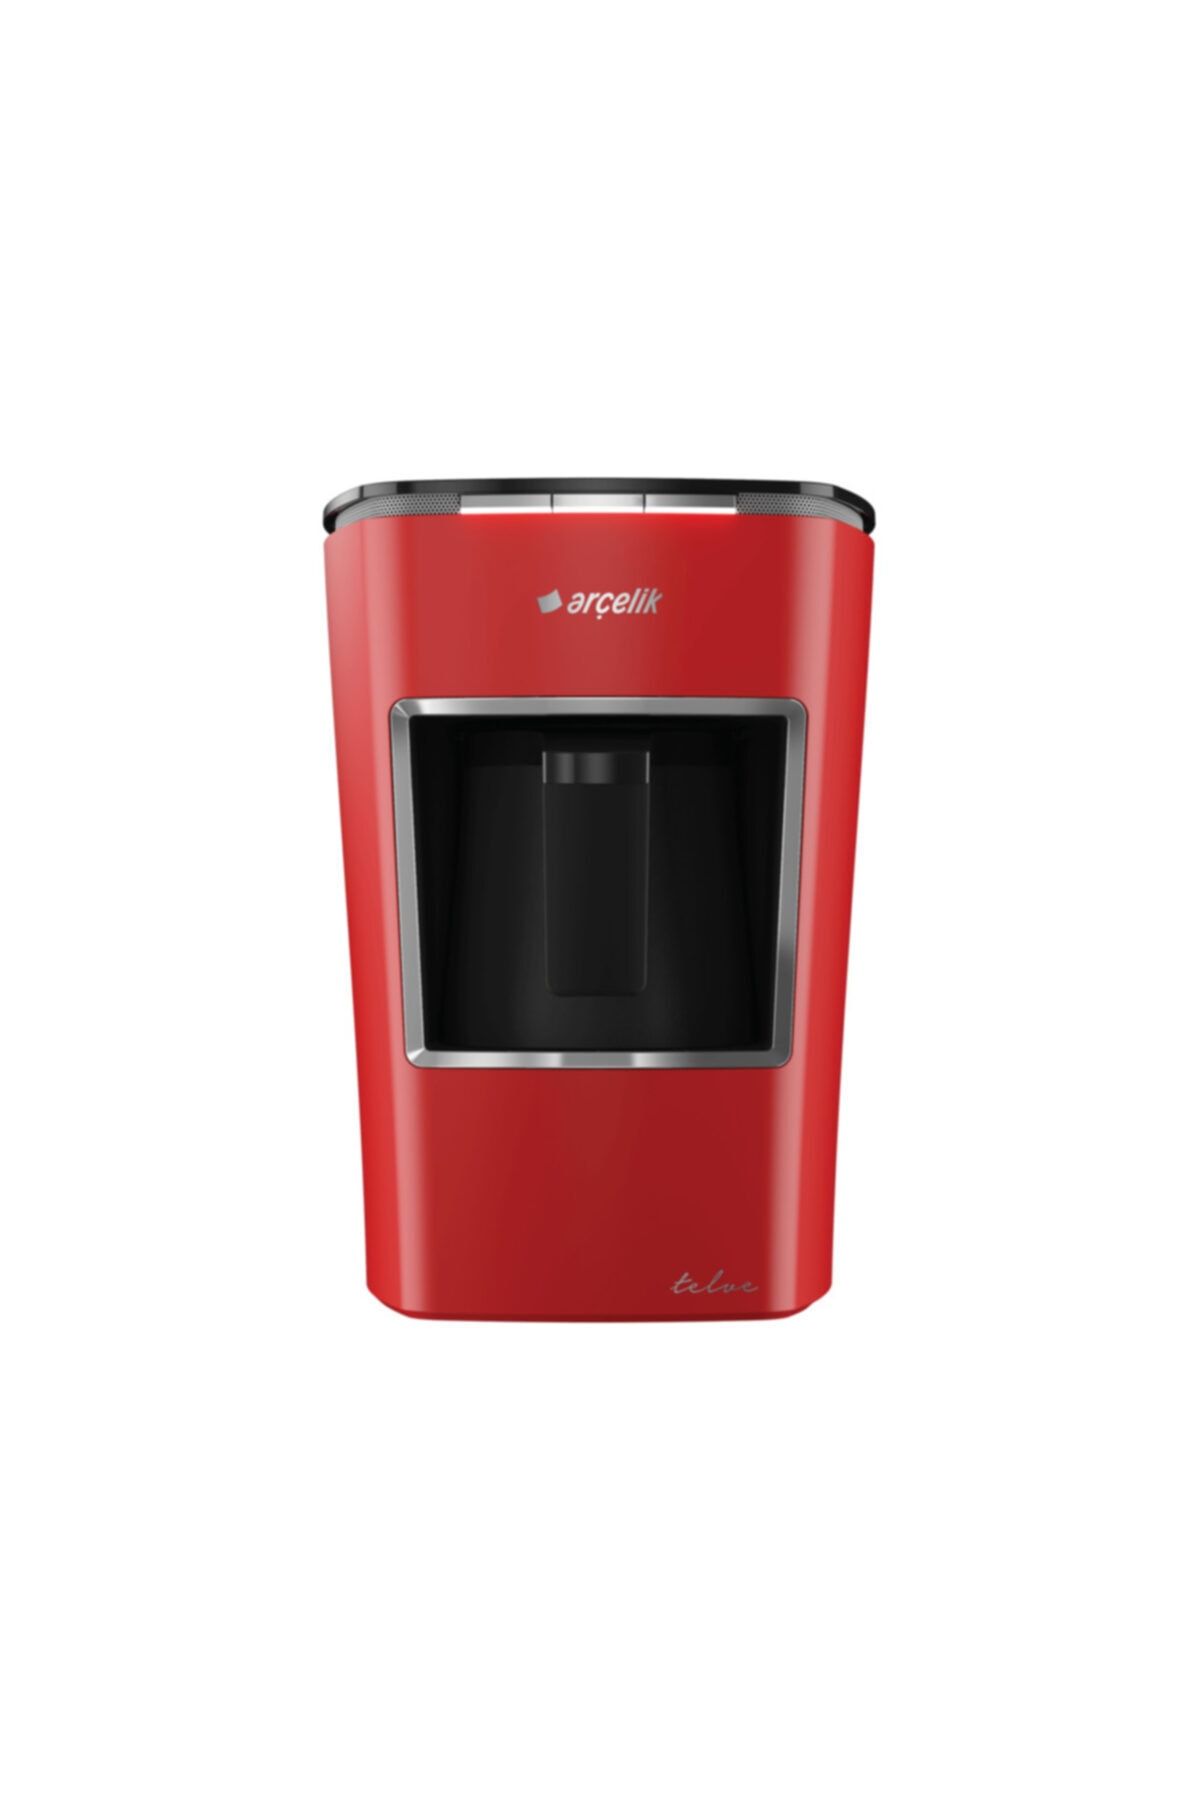 Arçelik K 3400 Kırmızı Midi Telve Türk Kahvesi Makinesi